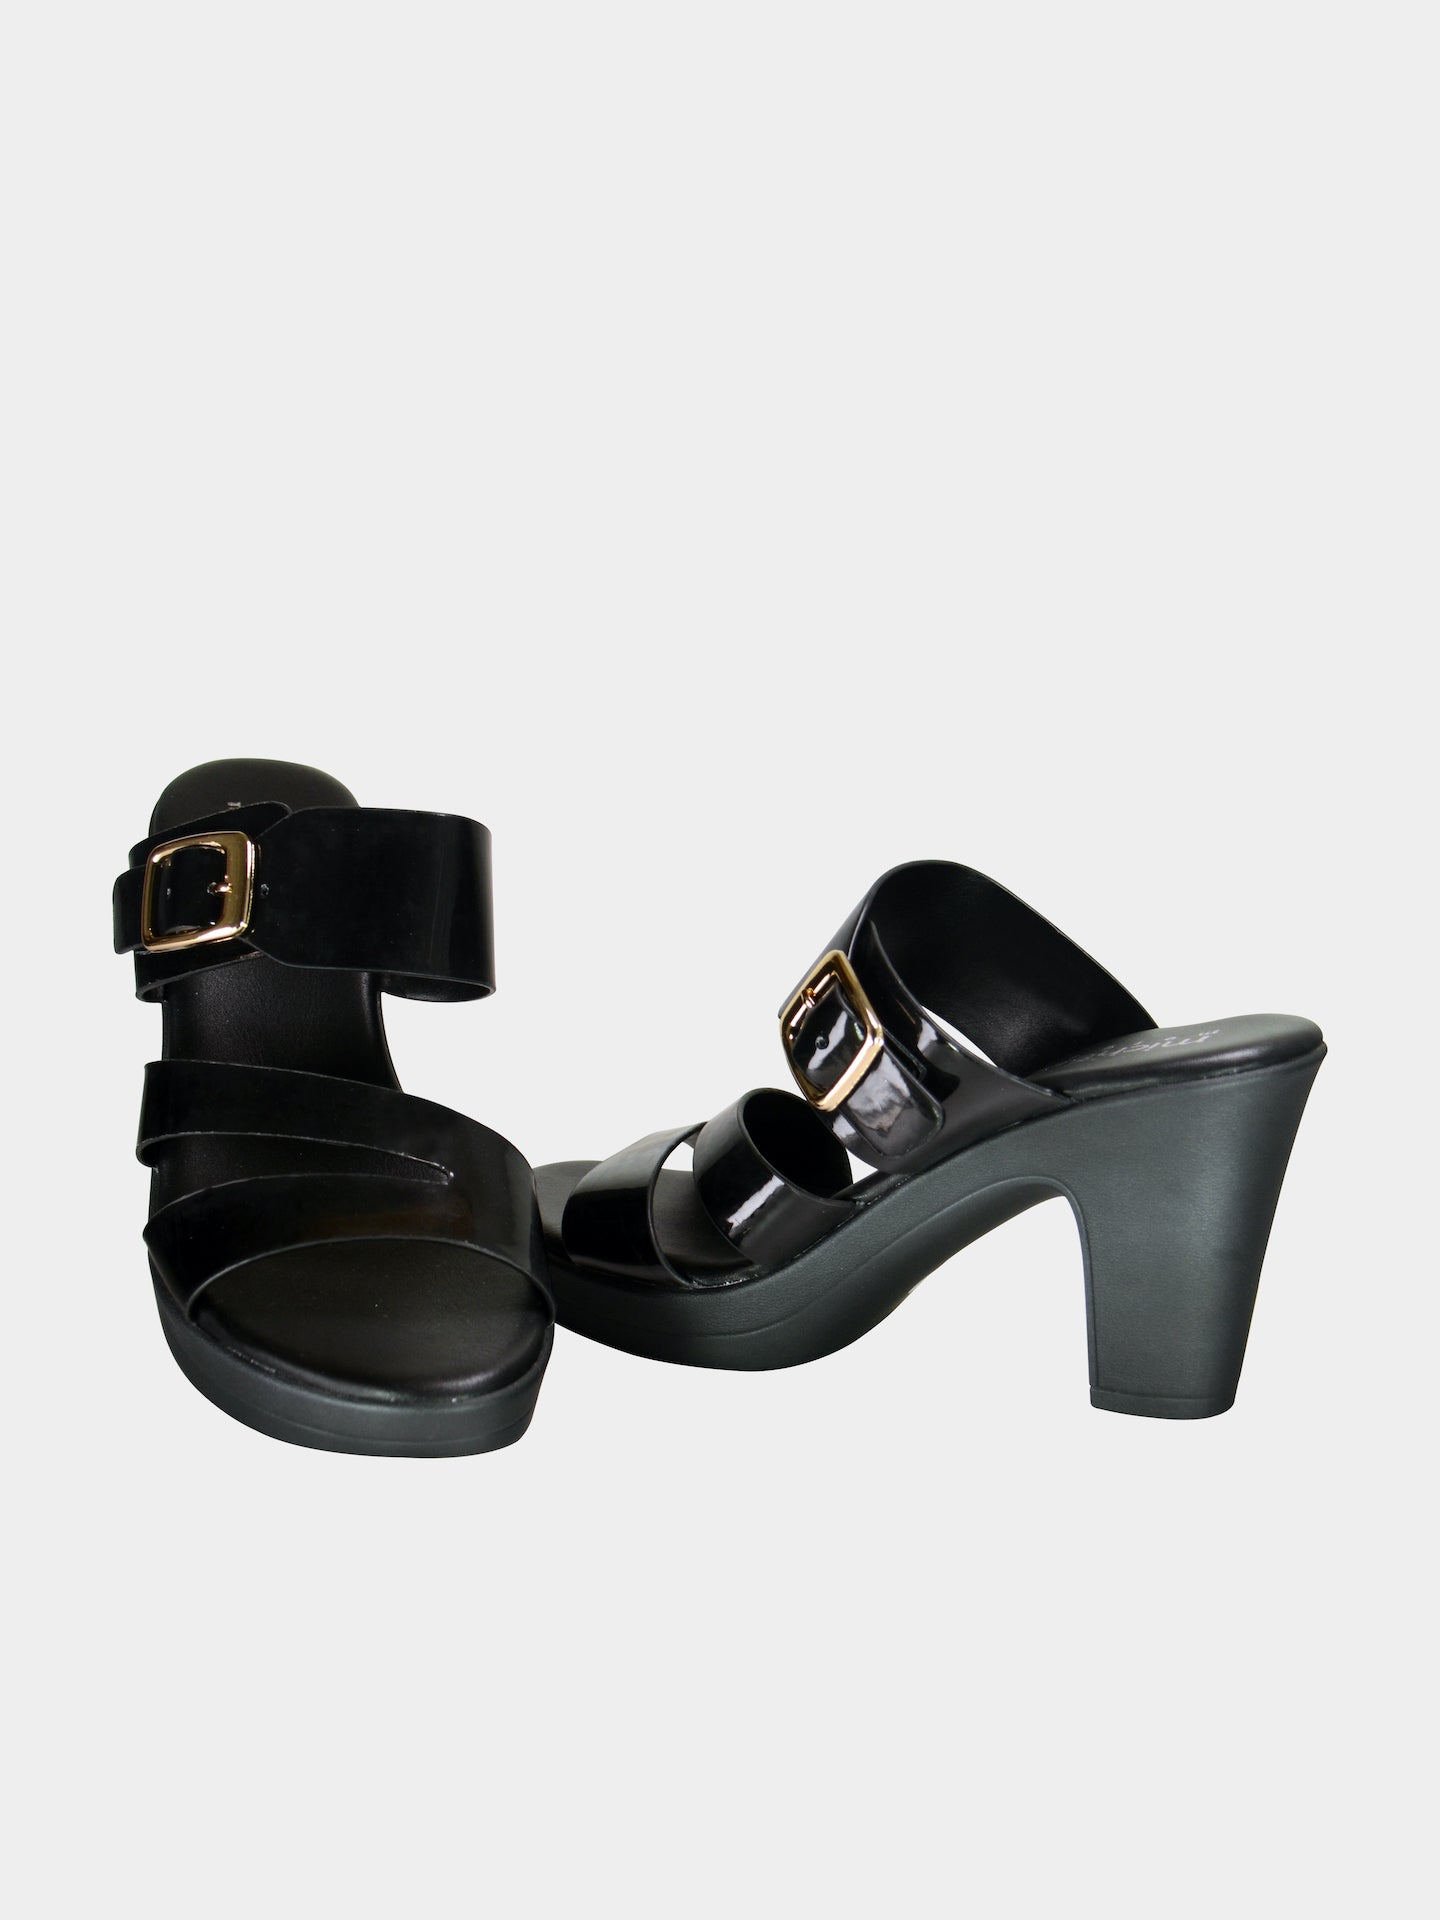 Michelle Morgan 913RJ163 Women's Heeled Sandals #color_Black